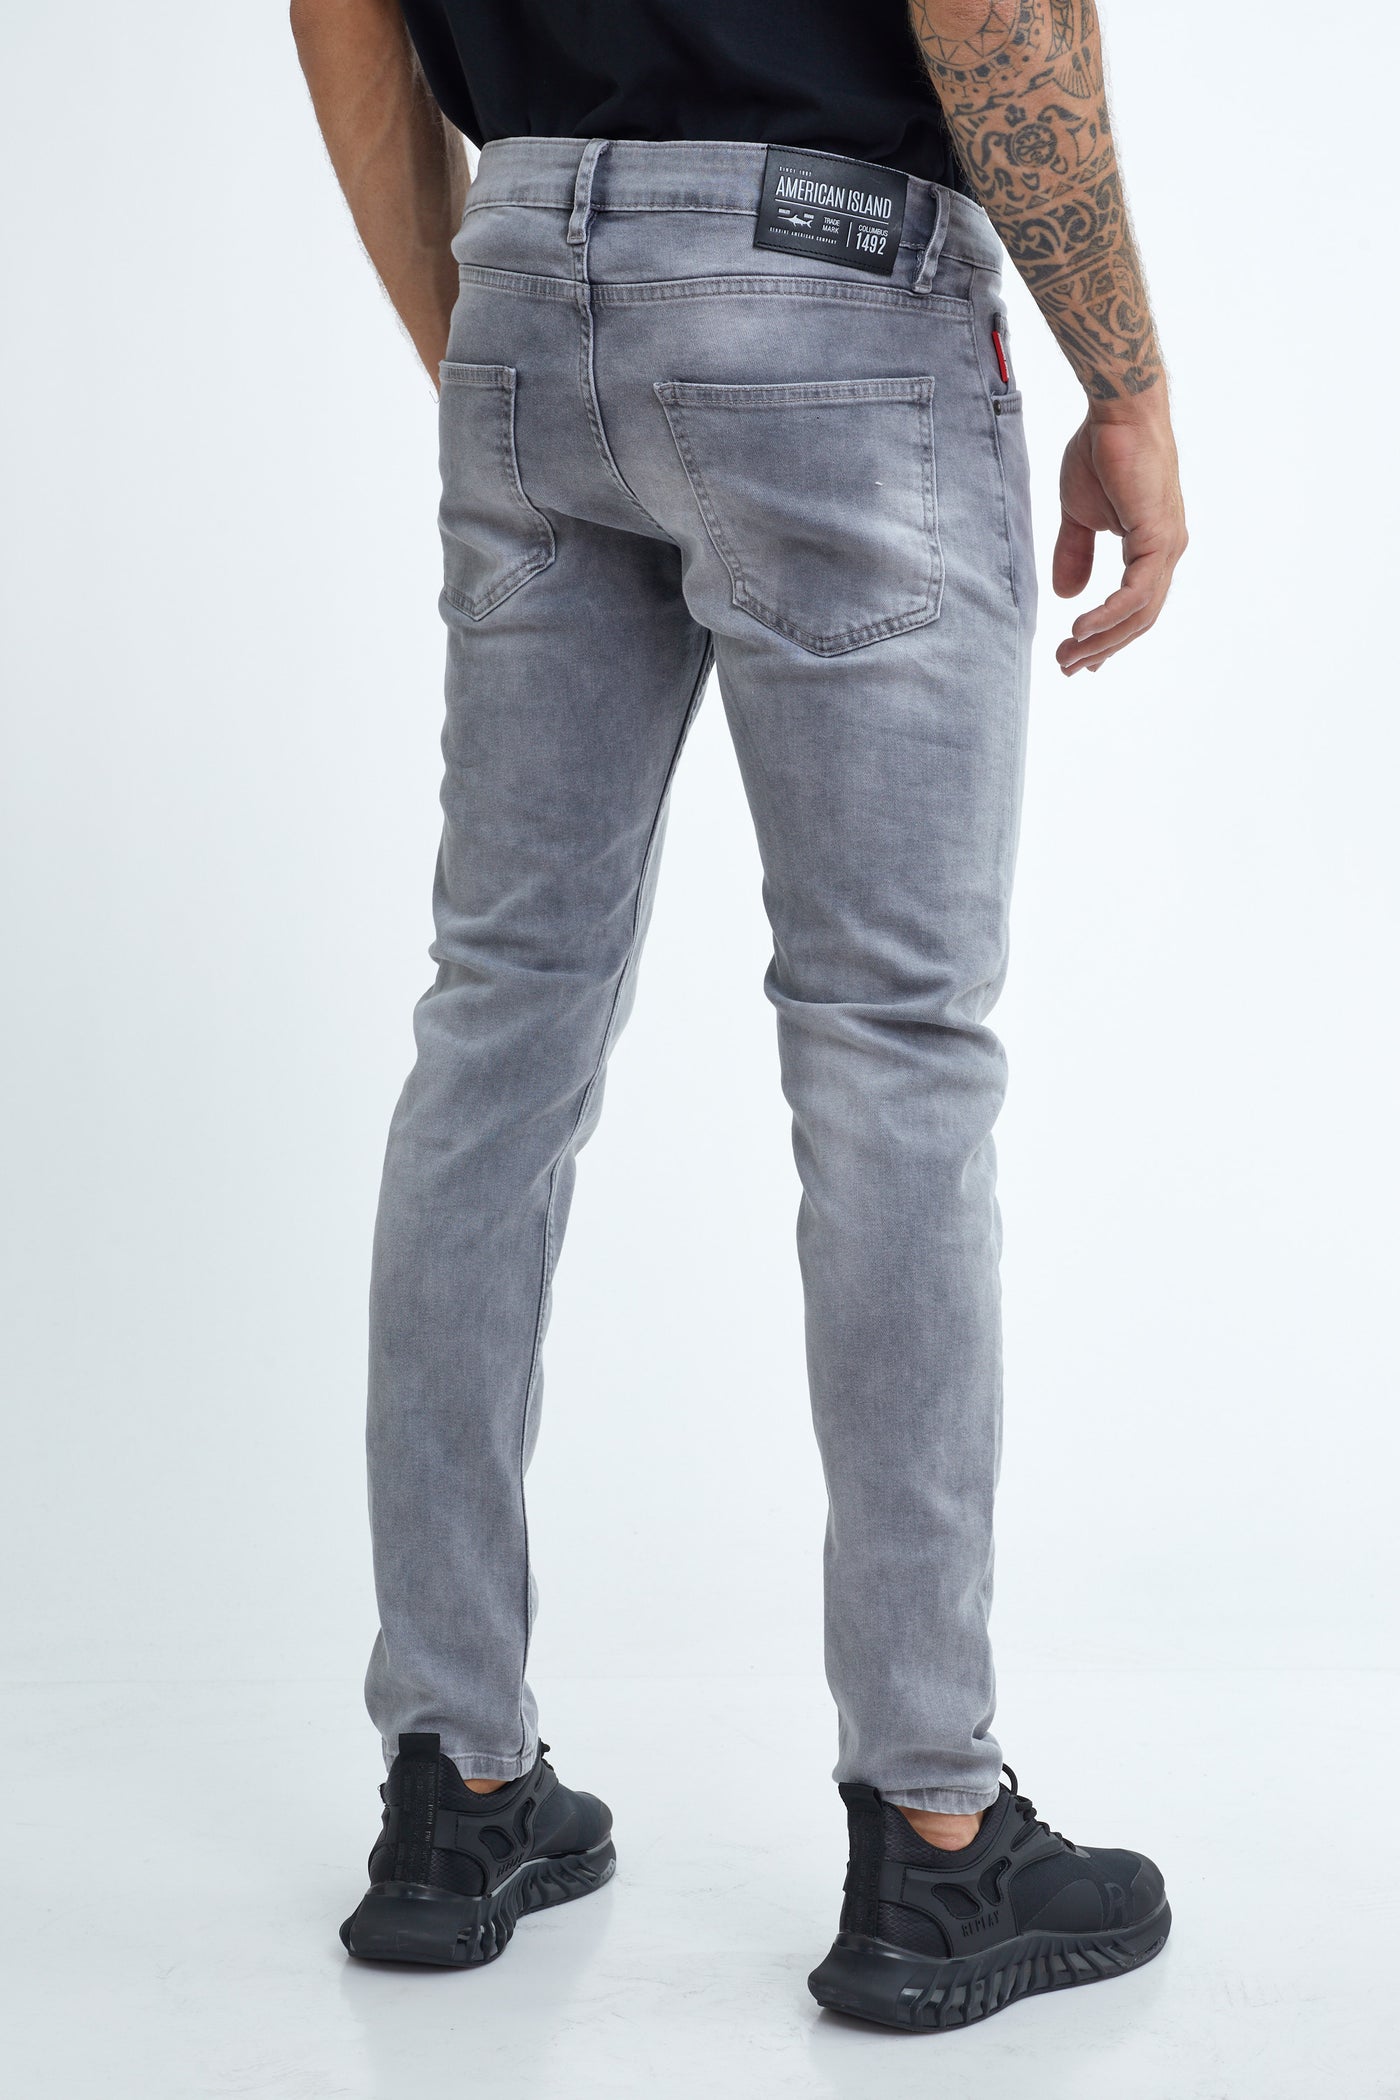 מכנס ג'ינס סלים אפור